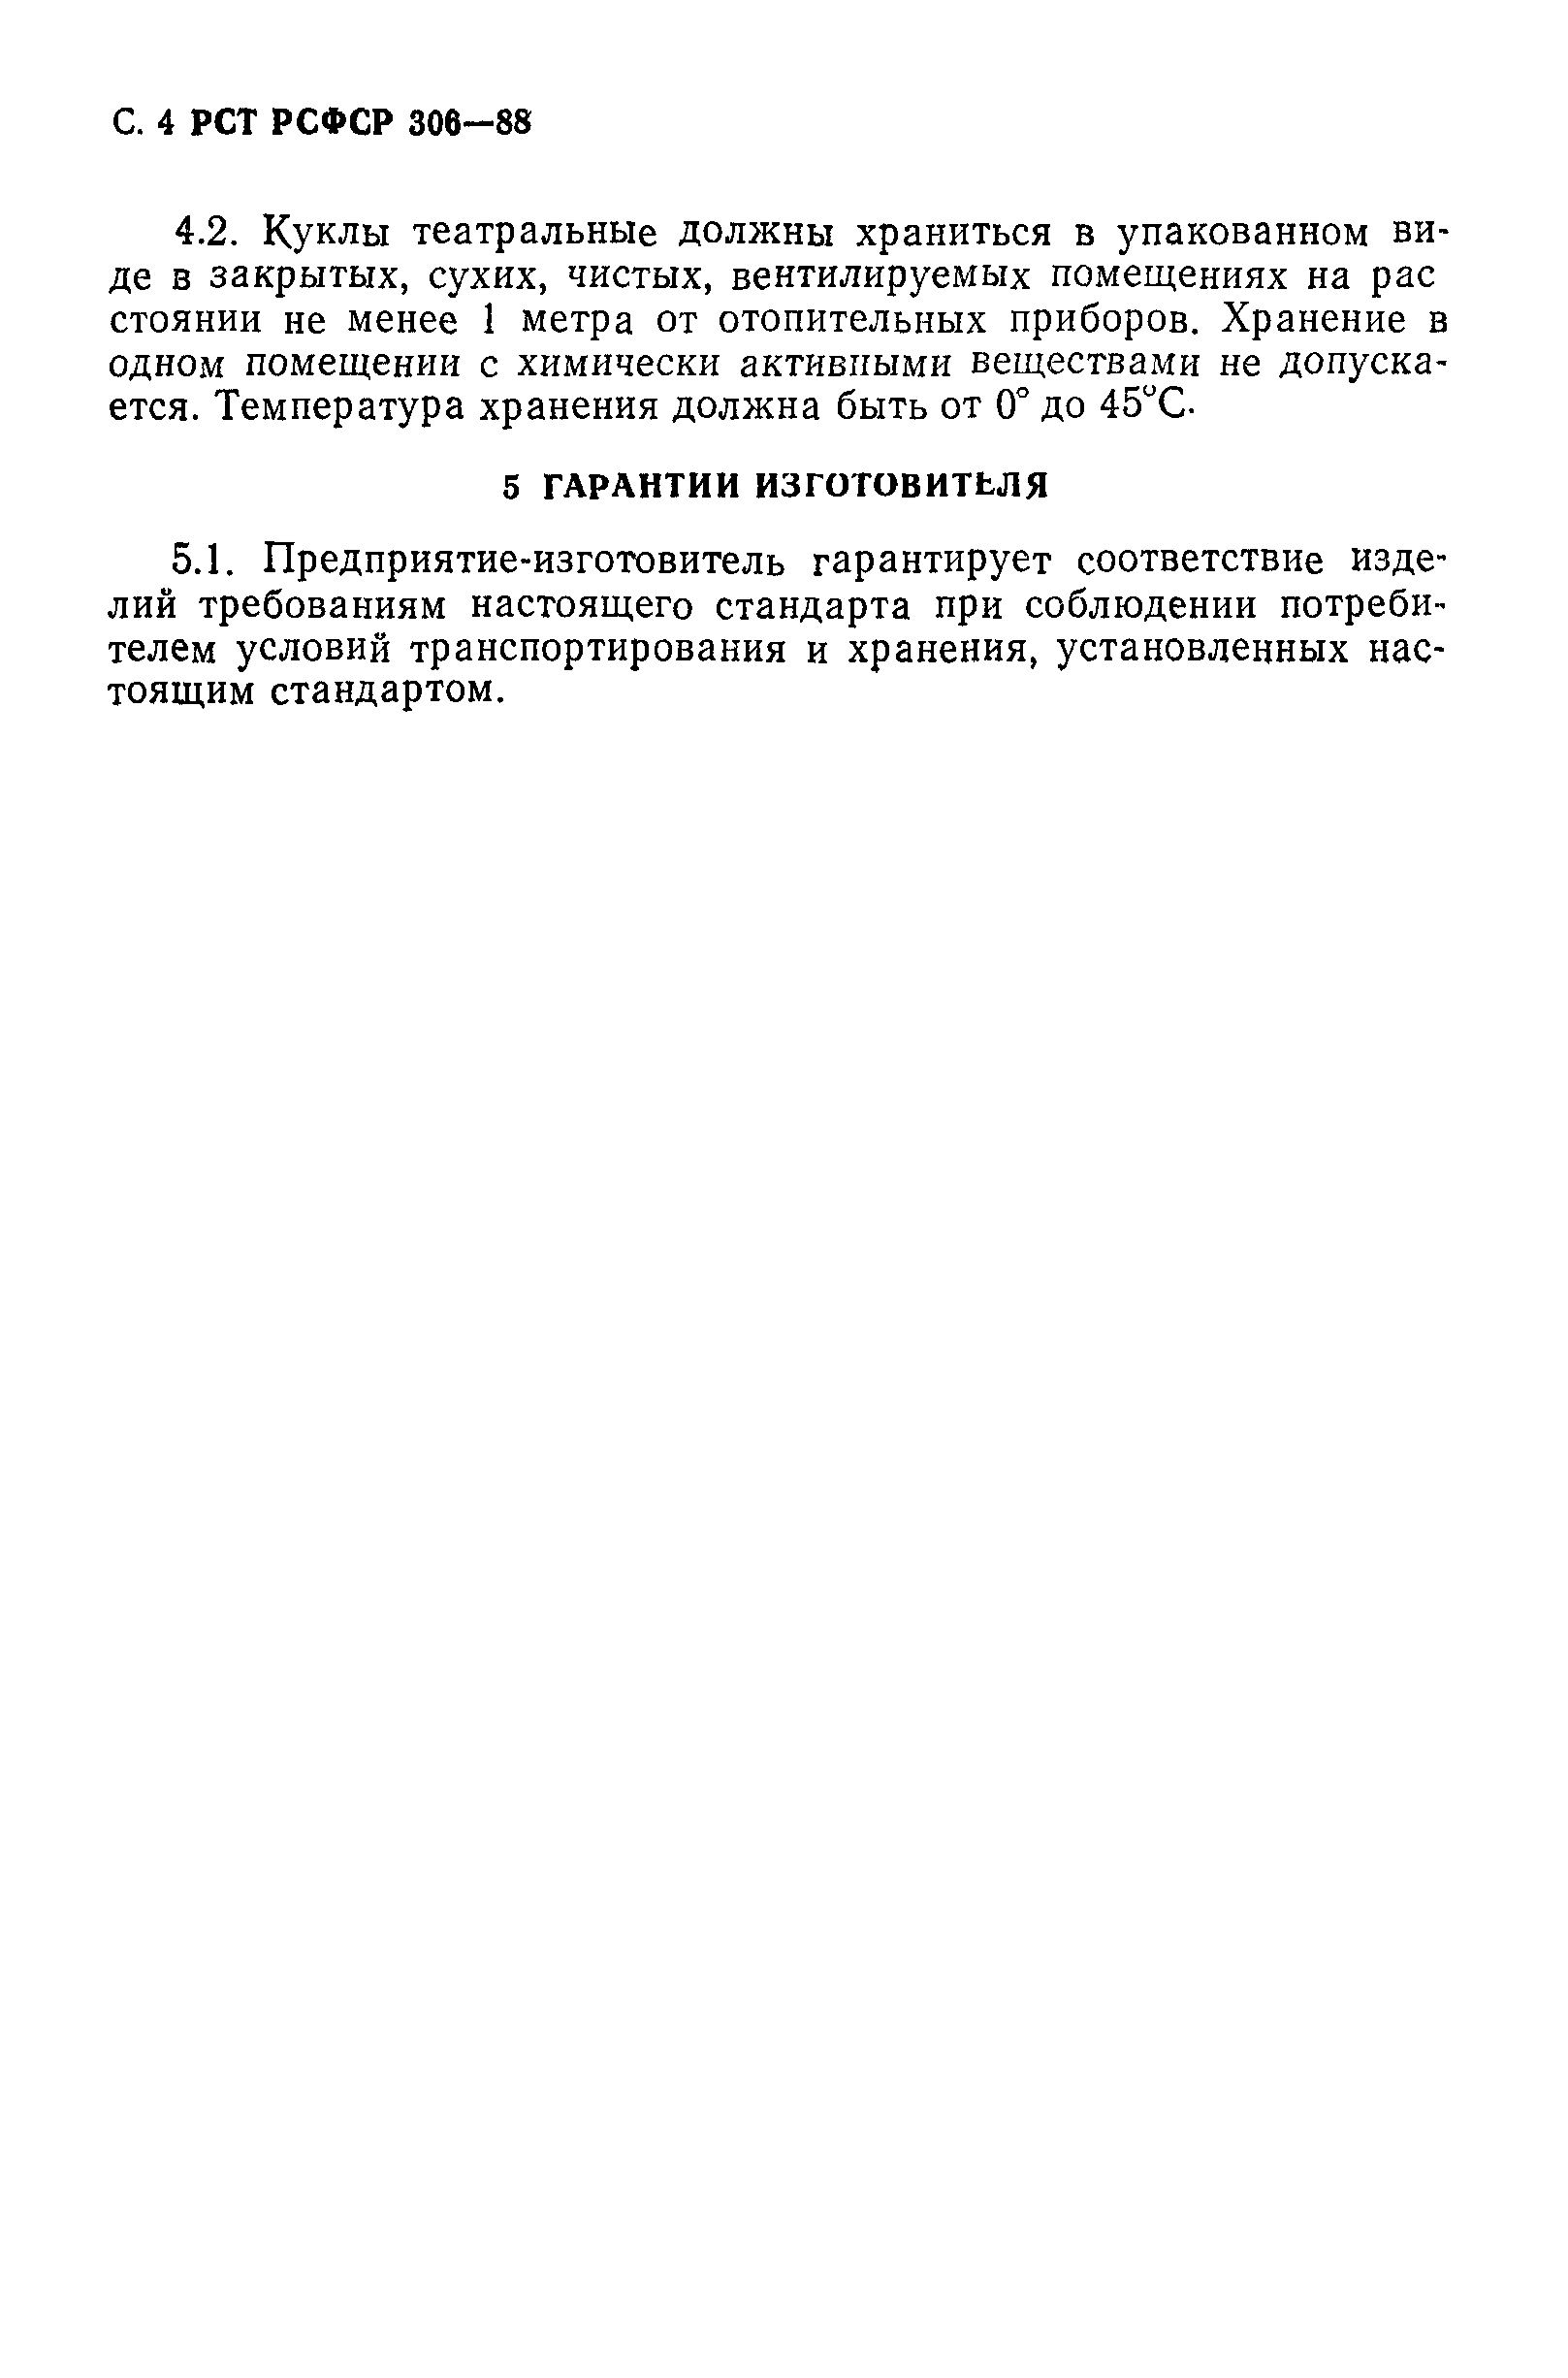 РСТ РСФСР 306-88